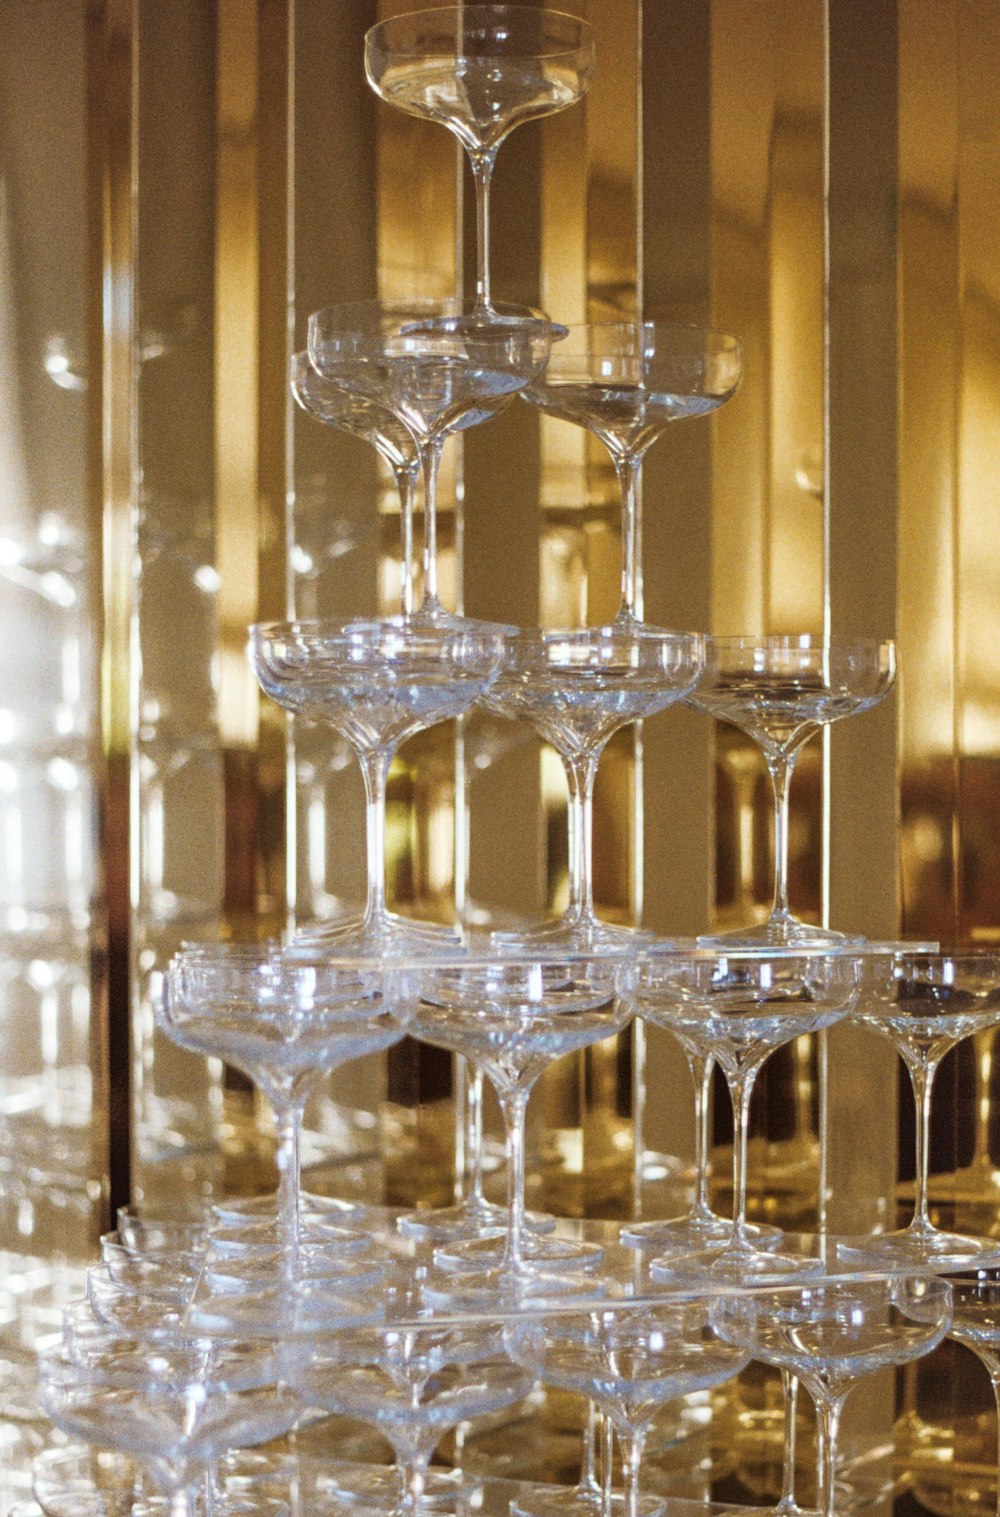 테이블 위에 놓인 와인잔 더미